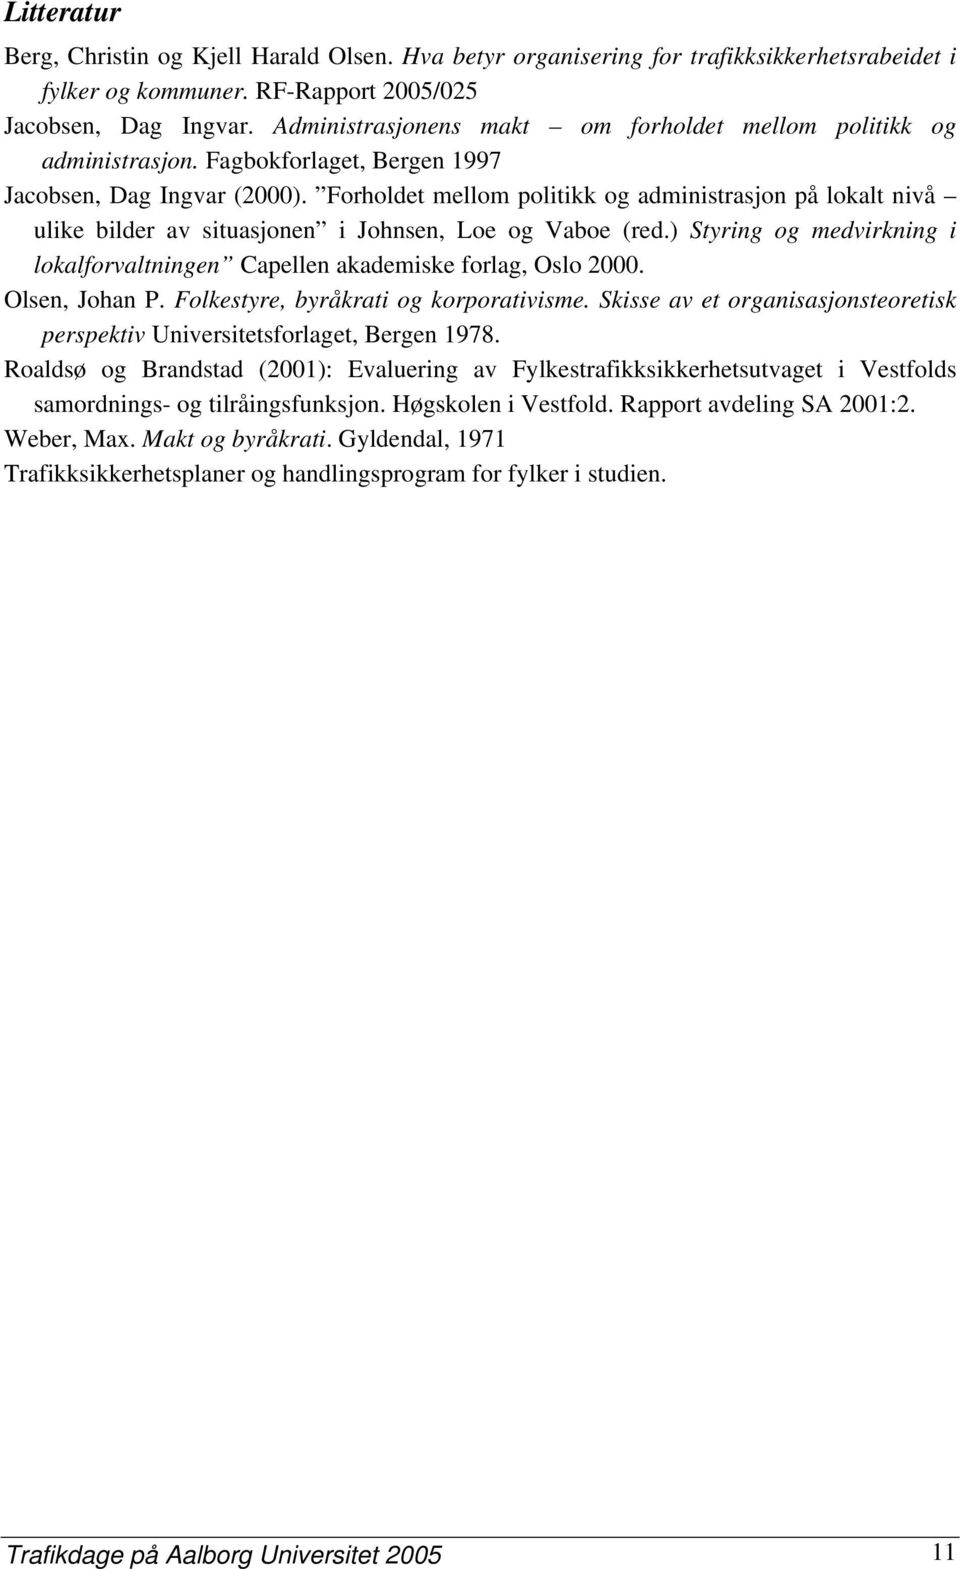 Forholdet mellom politikk og administrasjon på lokalt nivå ulike bilder av situasjonen i Johnsen, Loe og Vaboe (red.) Styring og medvirkning i lokalforvaltningen Capellen akademiske forlag, Oslo 2000.